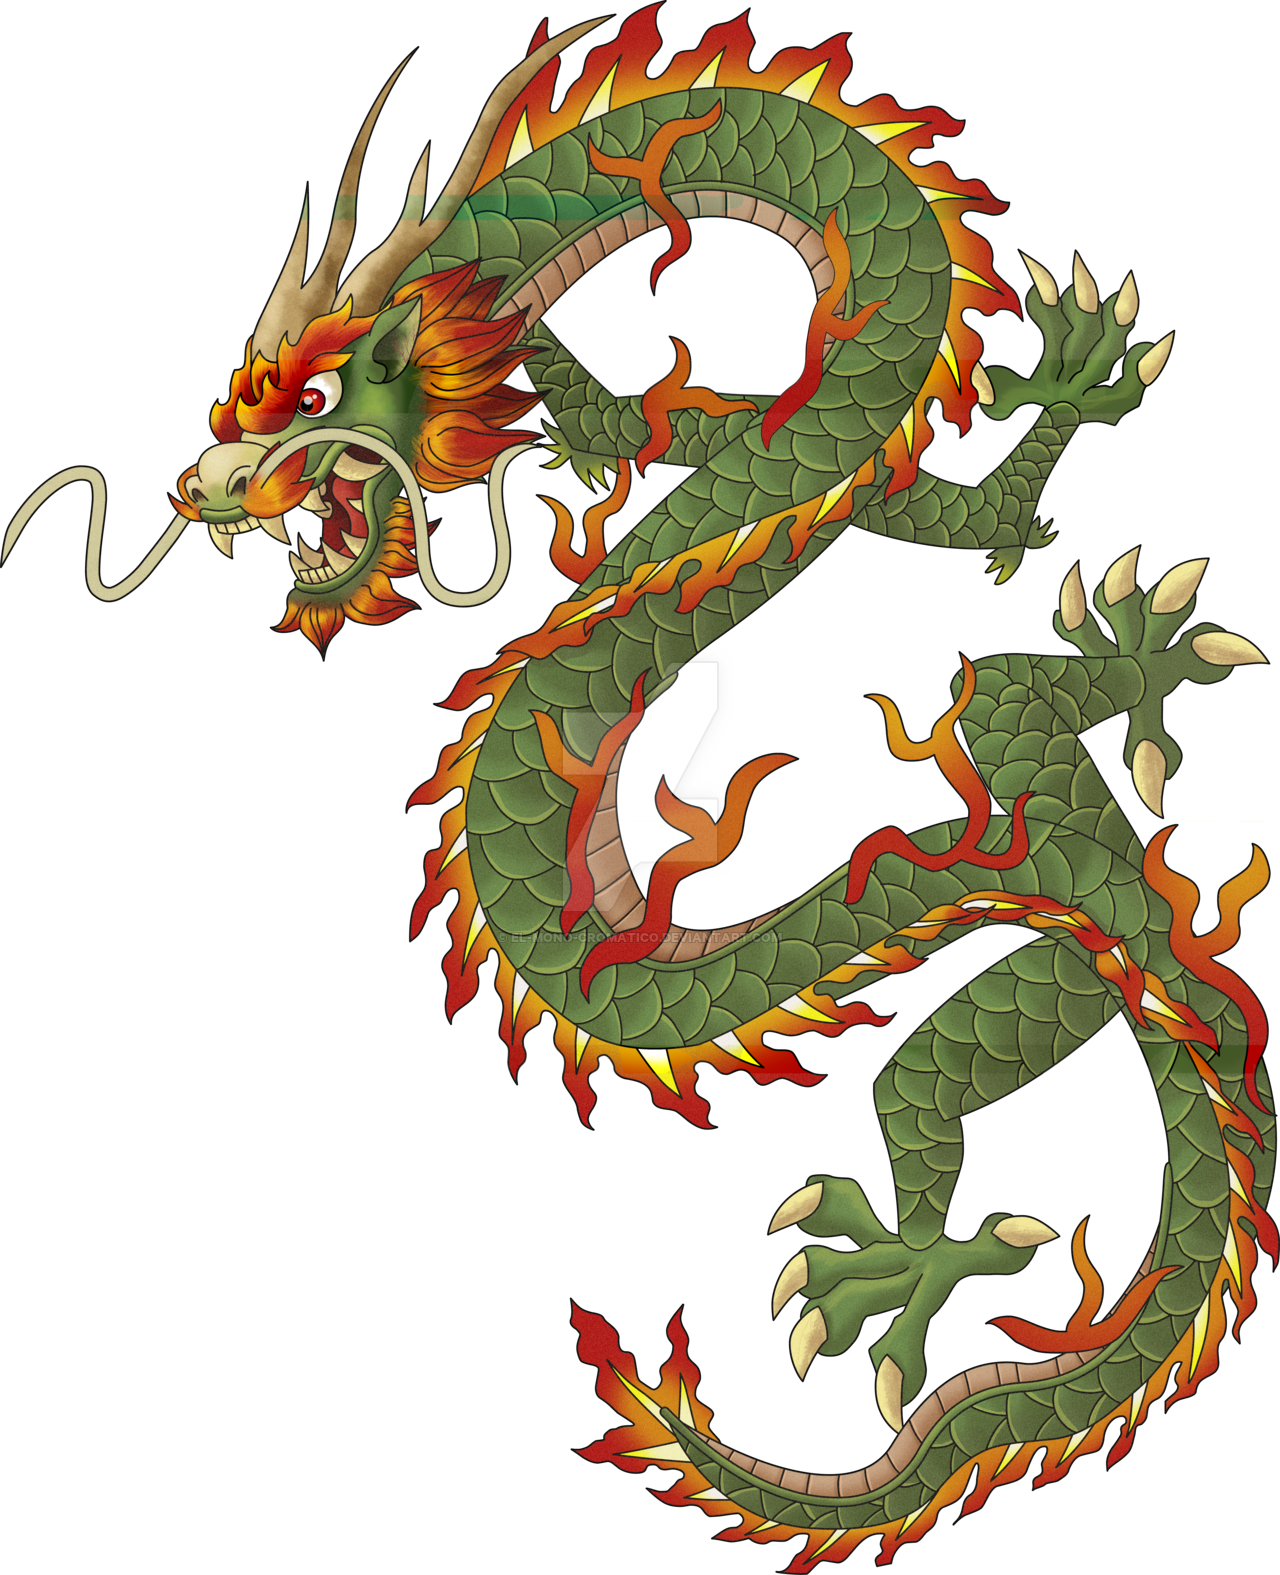 Immagine trasparente del drago cinese